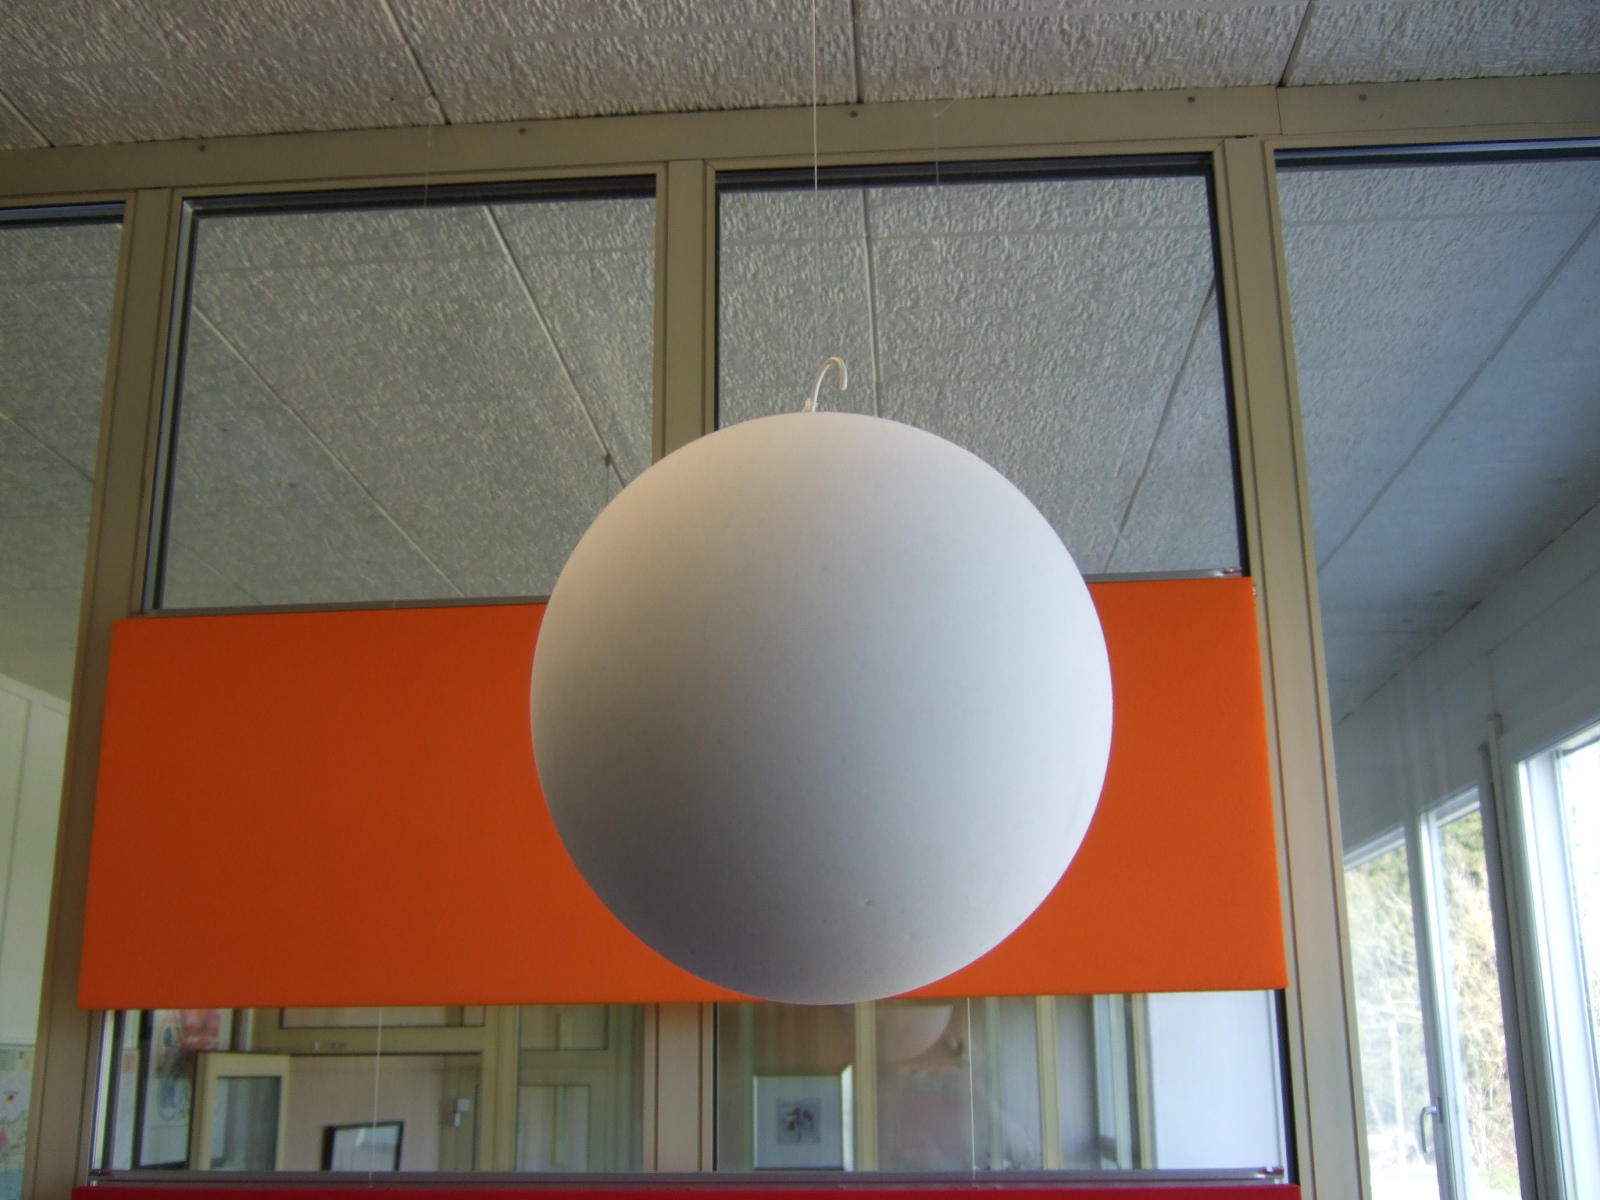 Bild eines weissen runden Balls, der von der Decke hängend als Schalldämpfer im Raum wirkt.